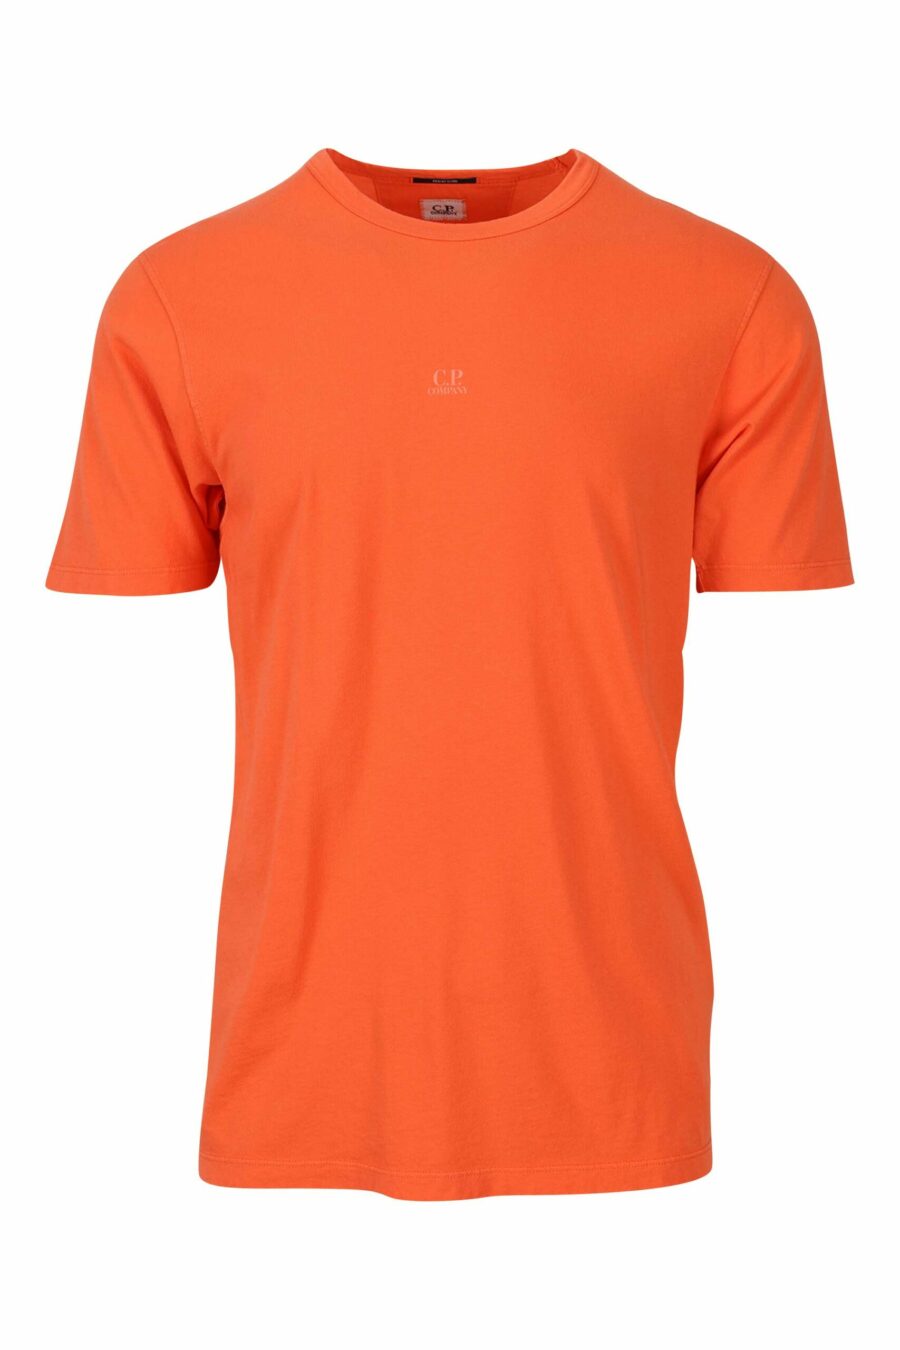 Orangefarbenes T-Shirt mit zentriertem Minilog - 7620943594928 1 skaliert